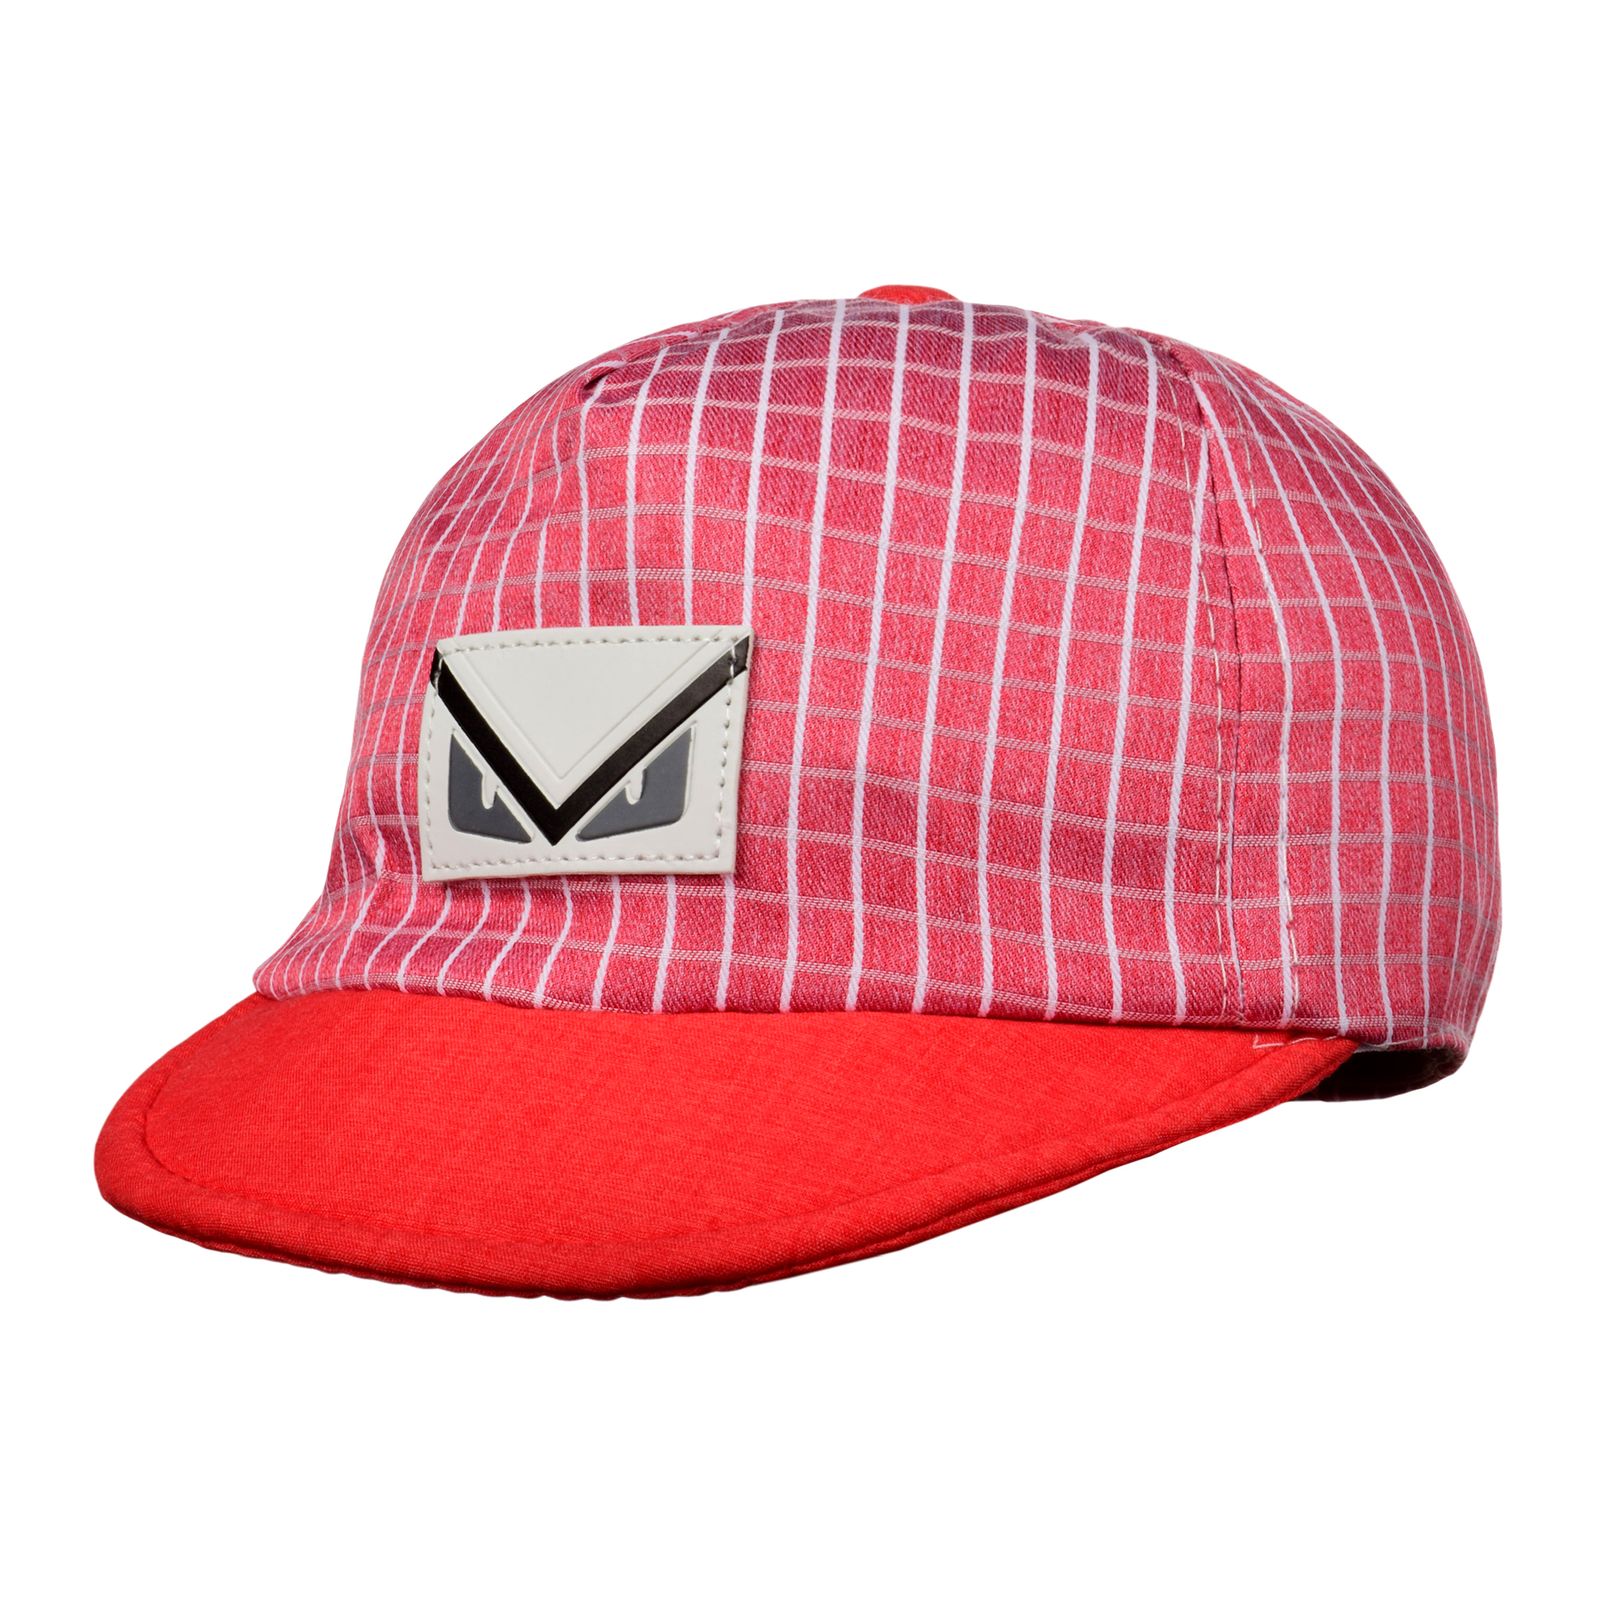 کلاه کپ بچگانه کد N31651 -  - 1